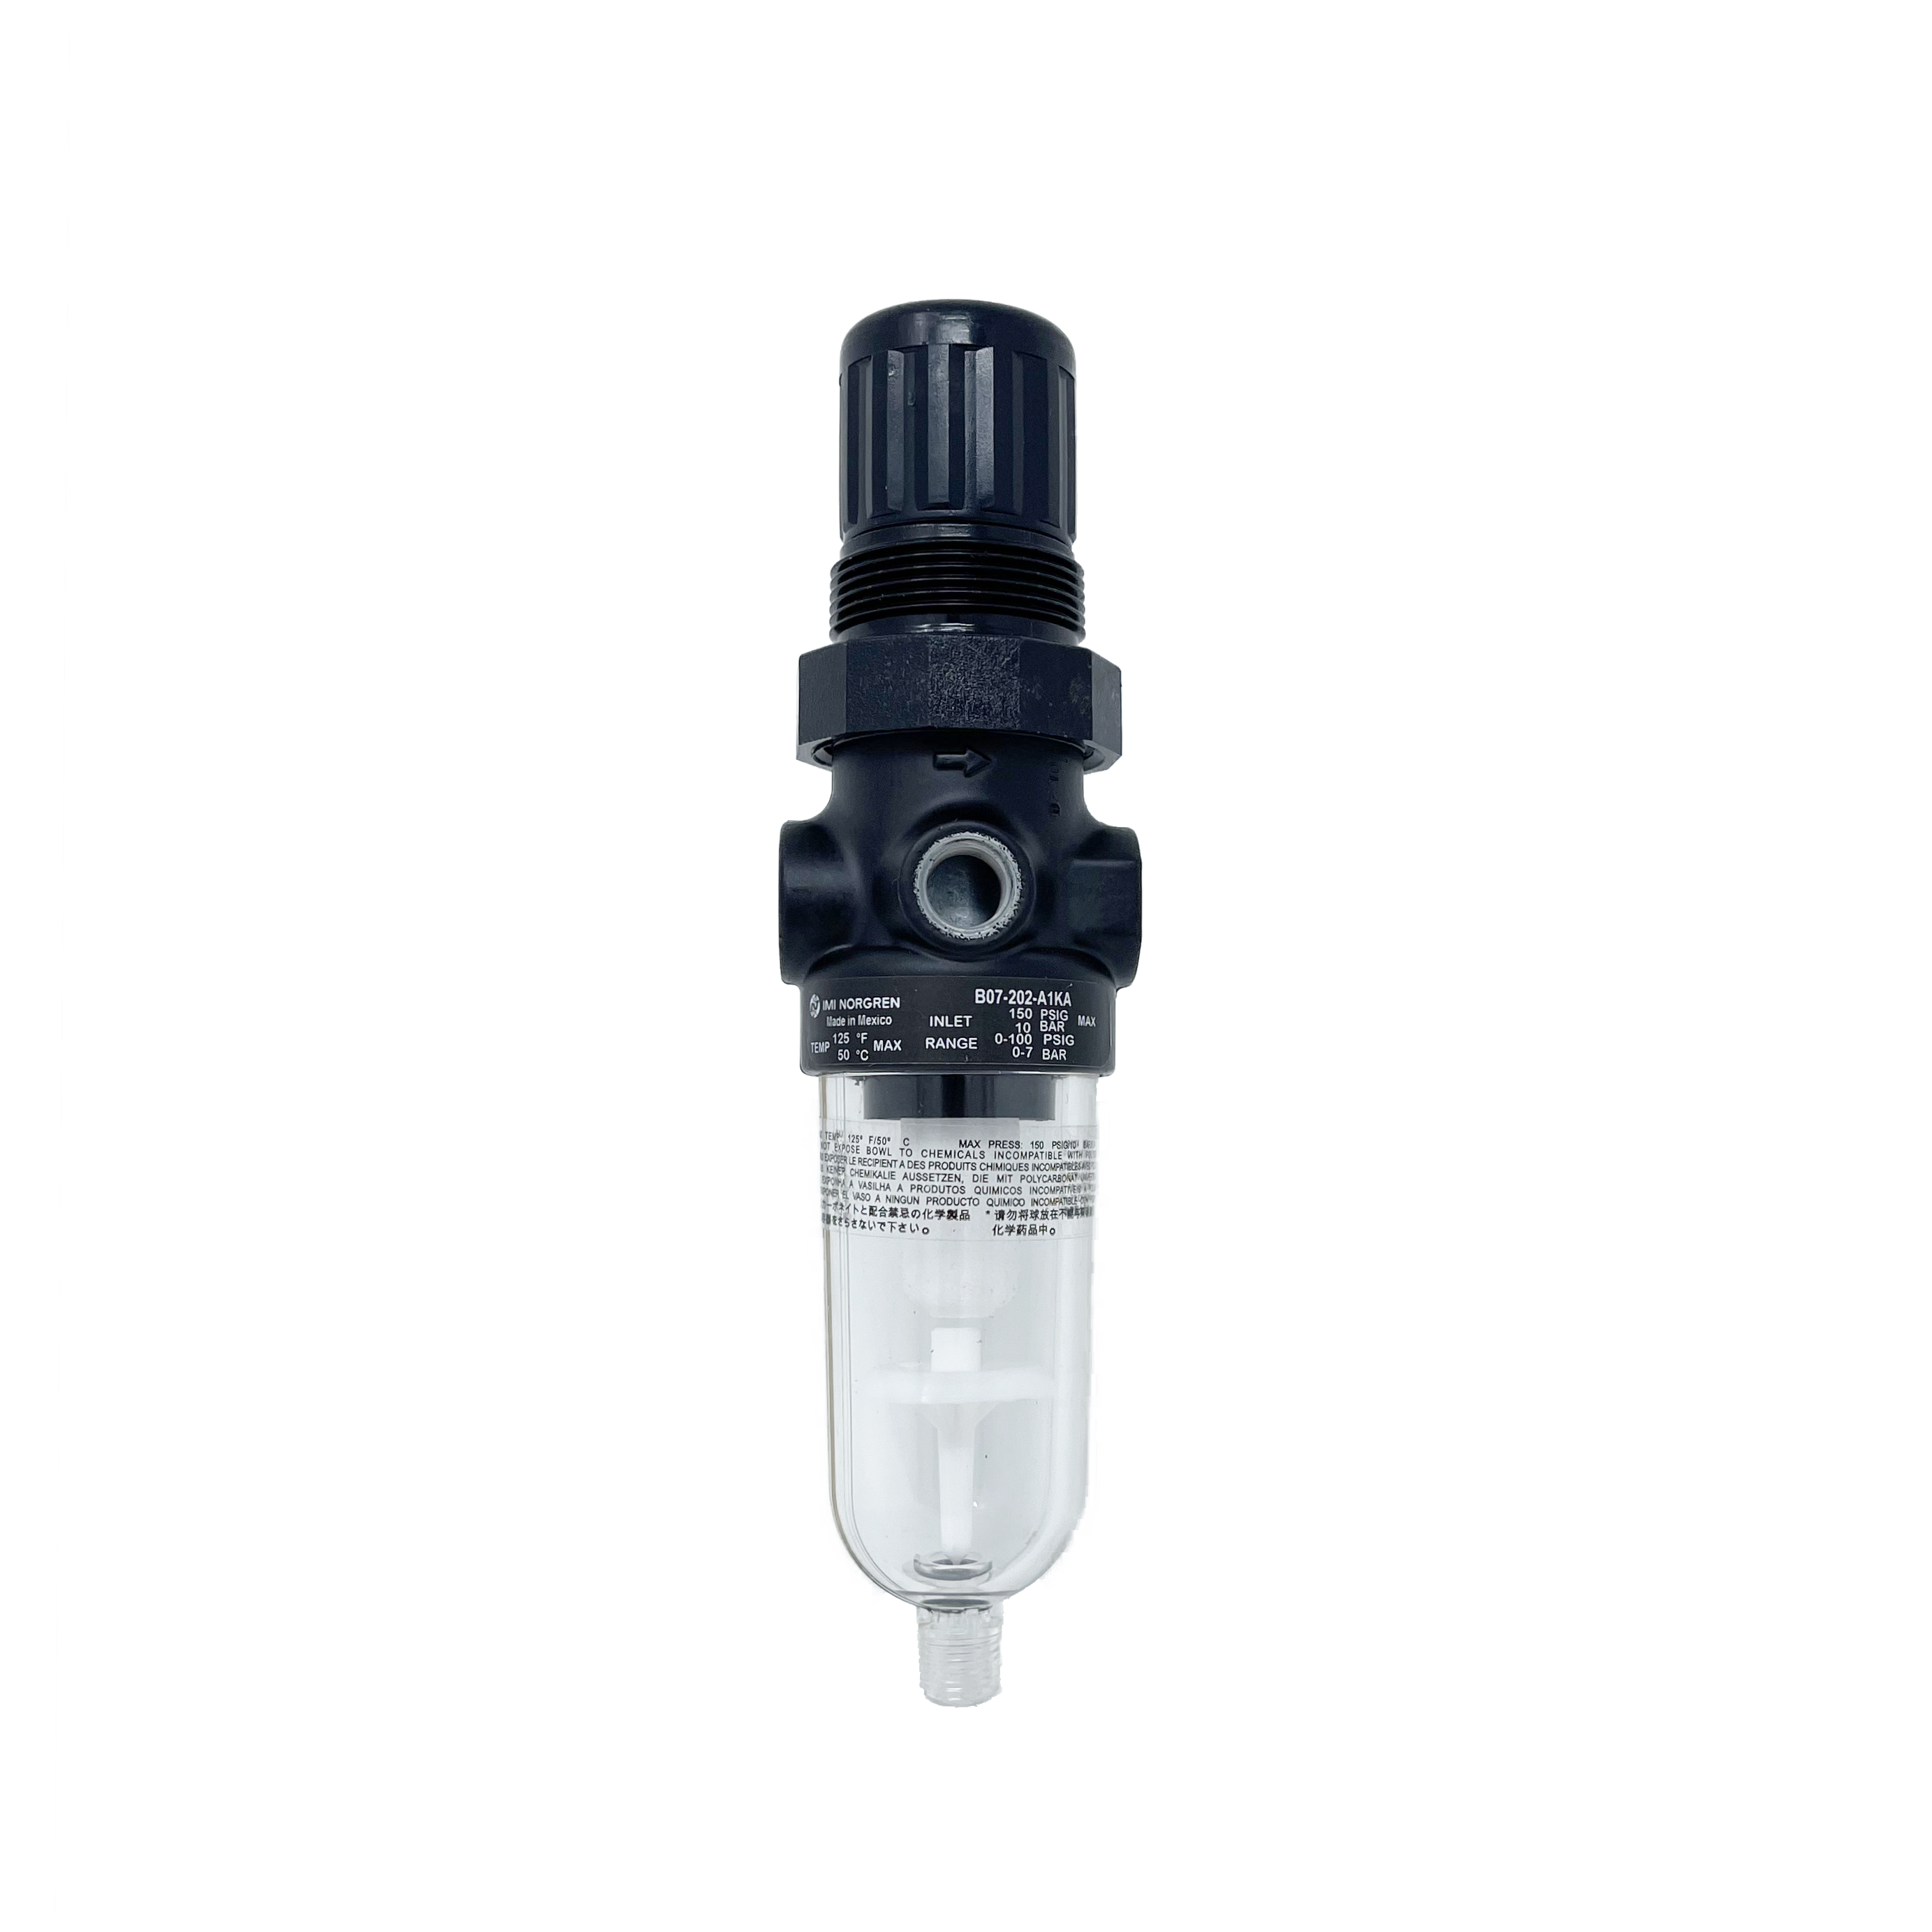 B07-201-M1KA : Norgren B07 miniature filter/regulator, Transparent Bowl, Relieving, Without Gauge, Manual Drain, 5-Micron, 5 to